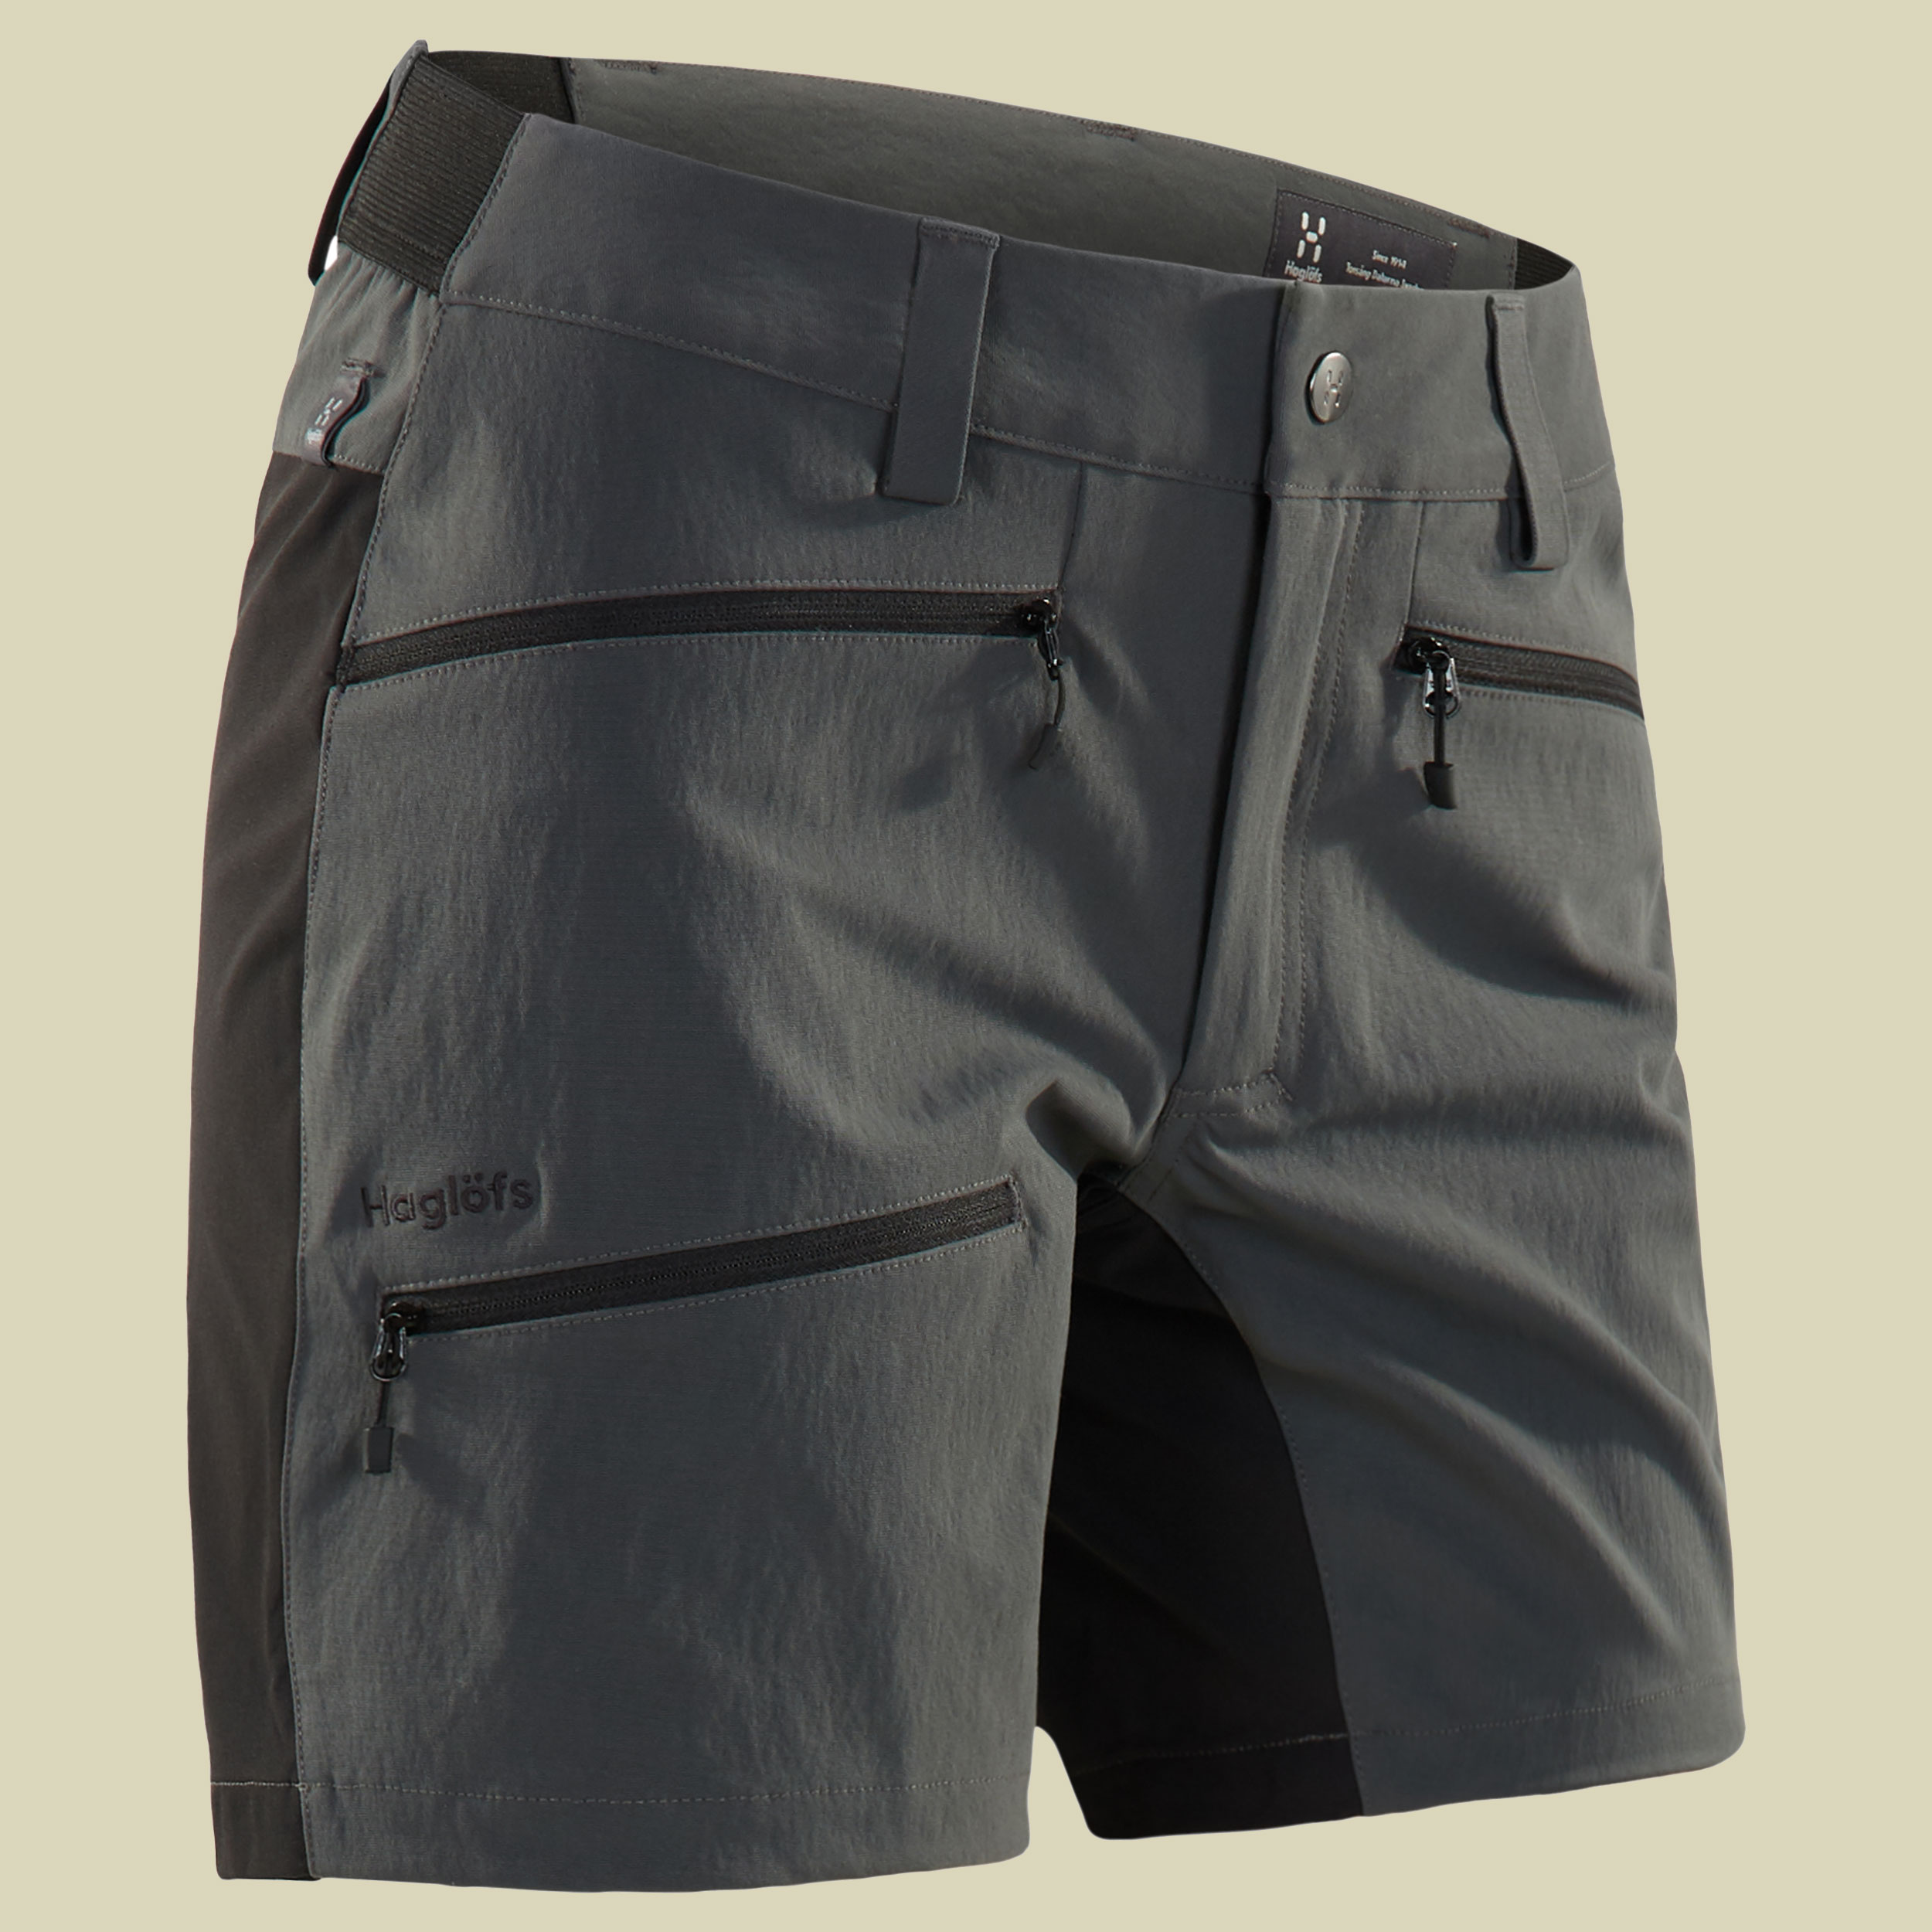 Rugged Flex Shorts Women Größe 38 Farbe magnetite/true black